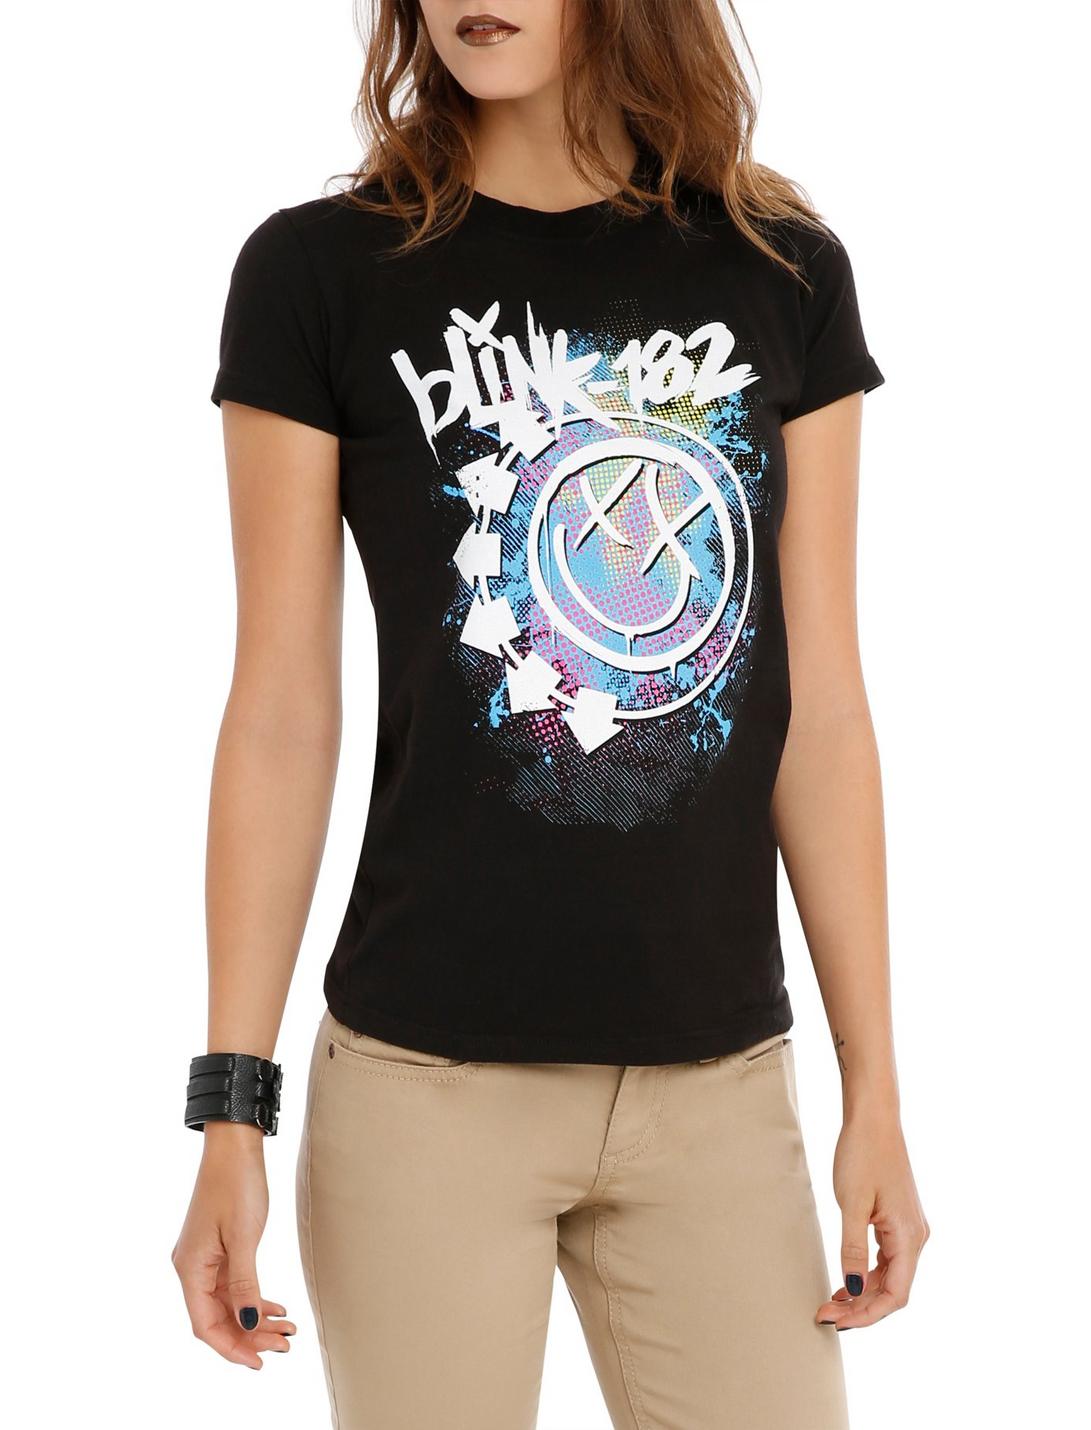 Blink-182 Dotted Smiley Girls T-Shirt, BLACK, hi-res